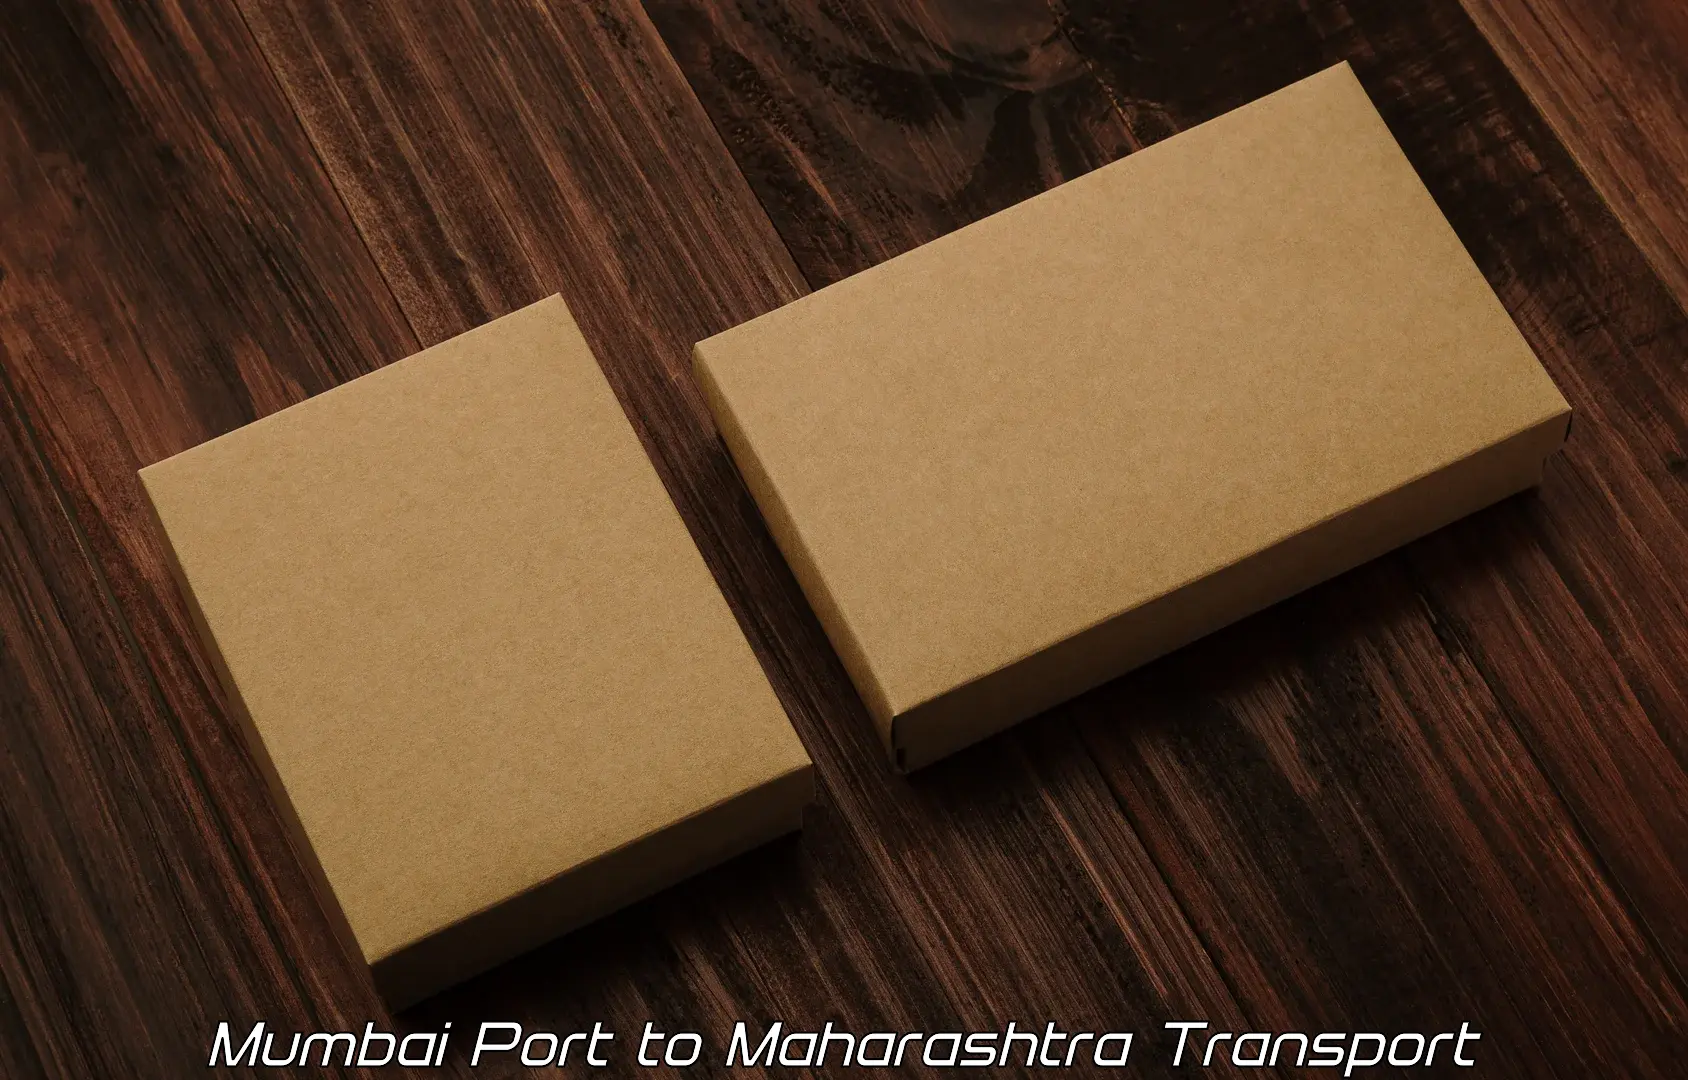 Road transport services Mumbai Port to Maharashtra